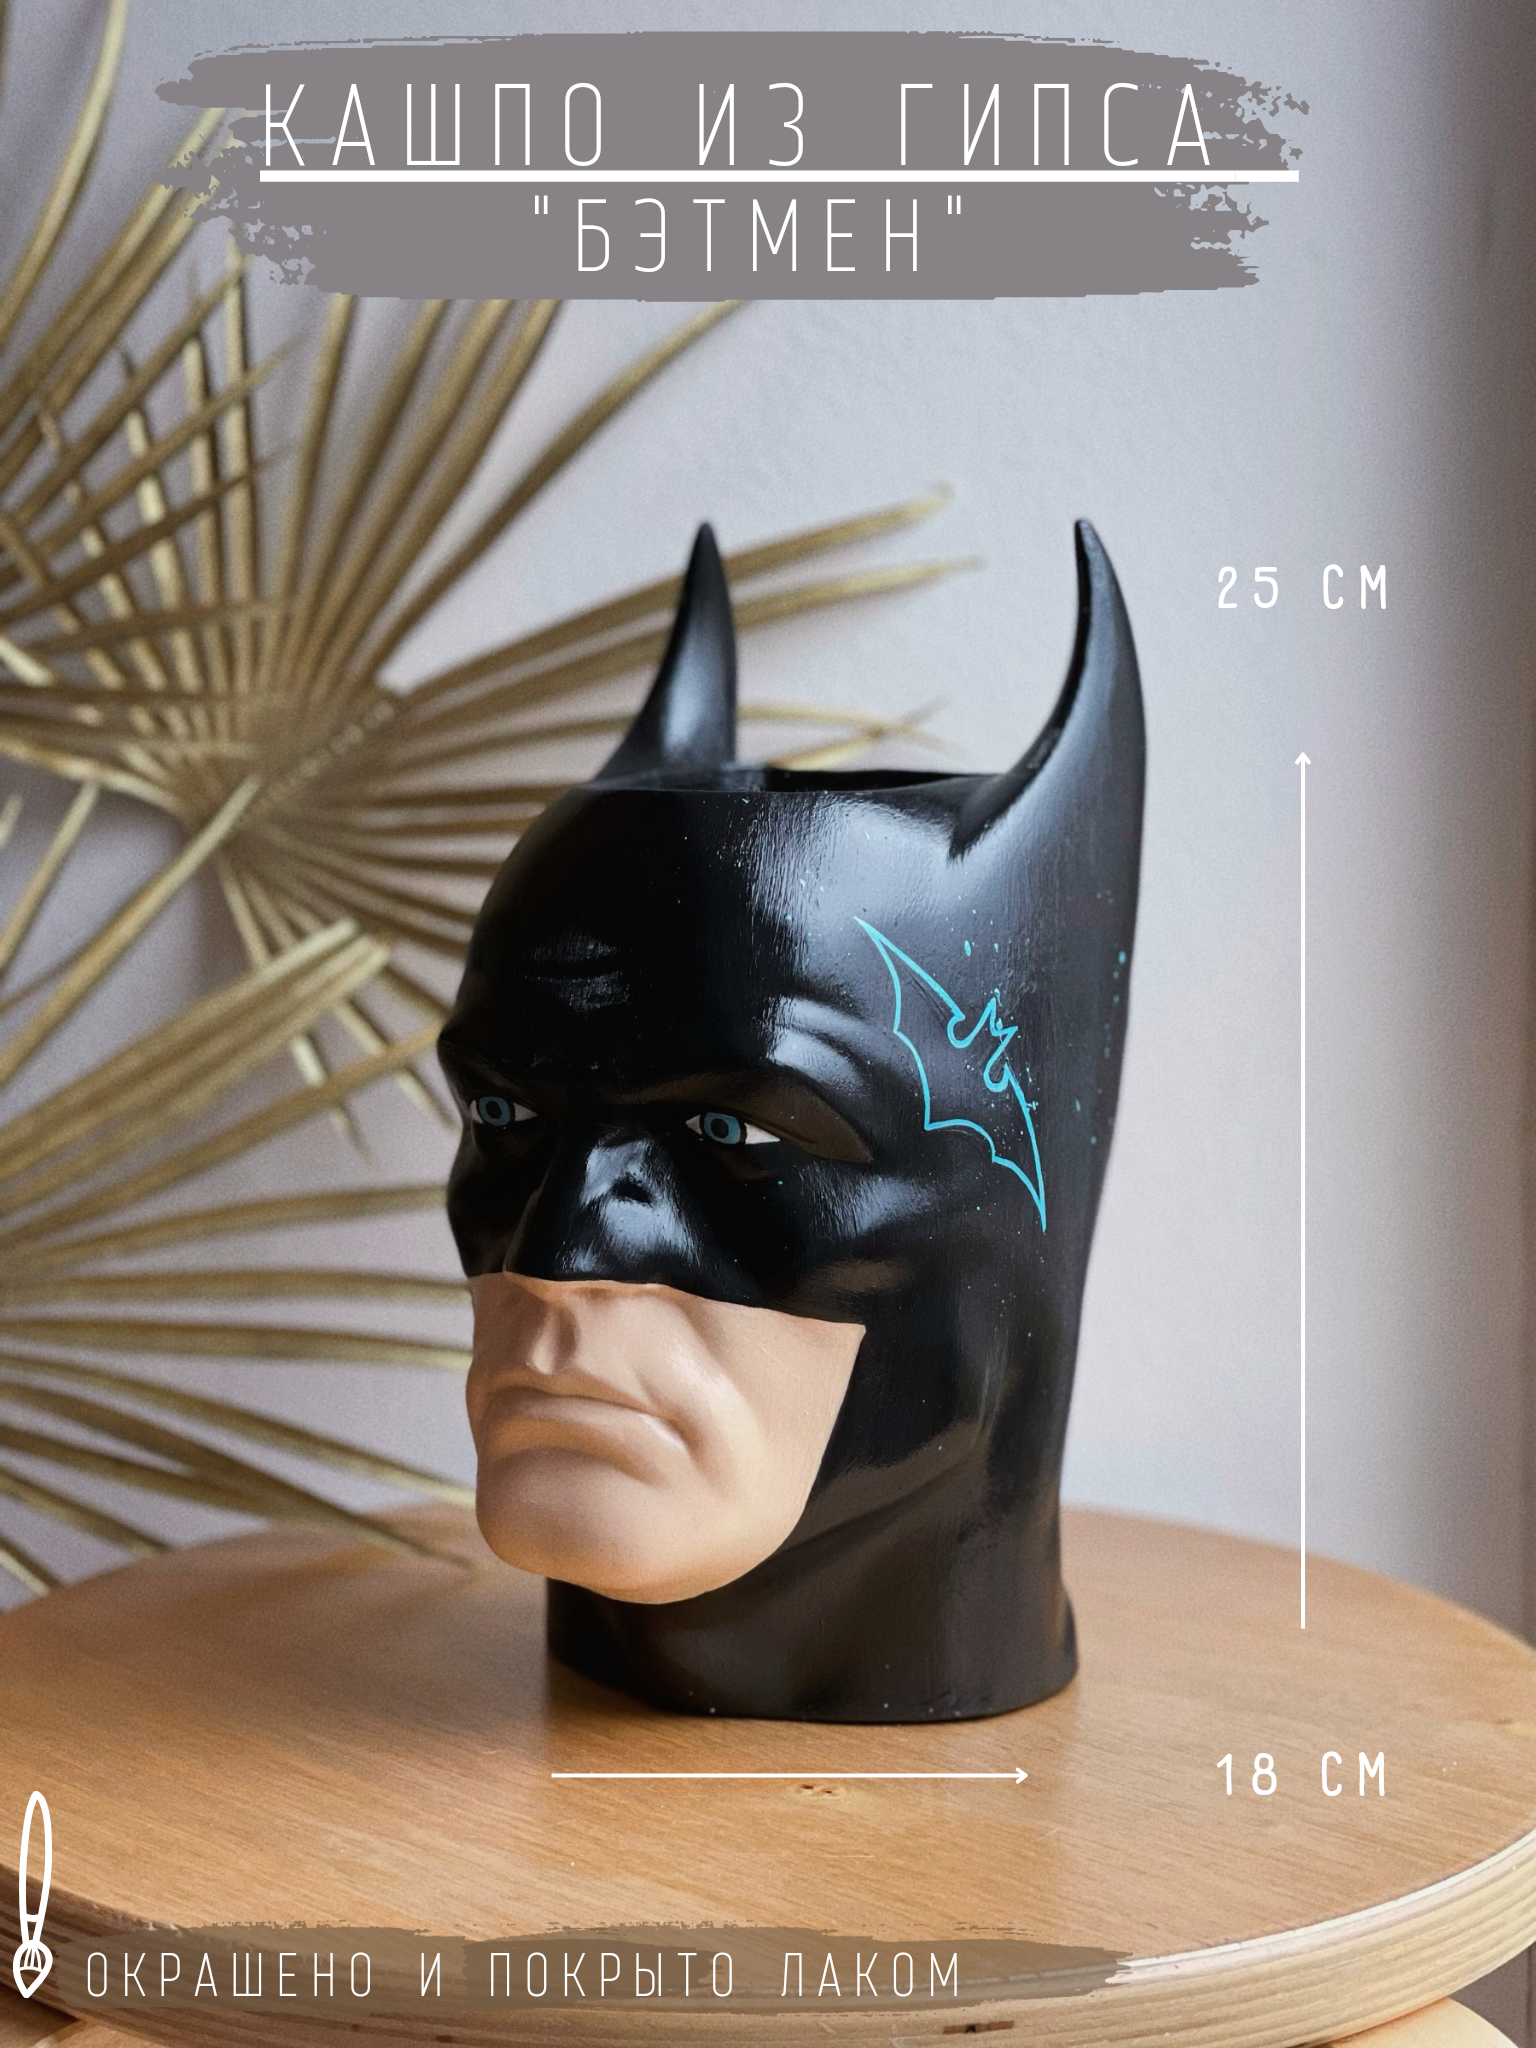 Кашпо/горшок из гипса - Бэтмен в черном цвете с дизайном, 25 см.